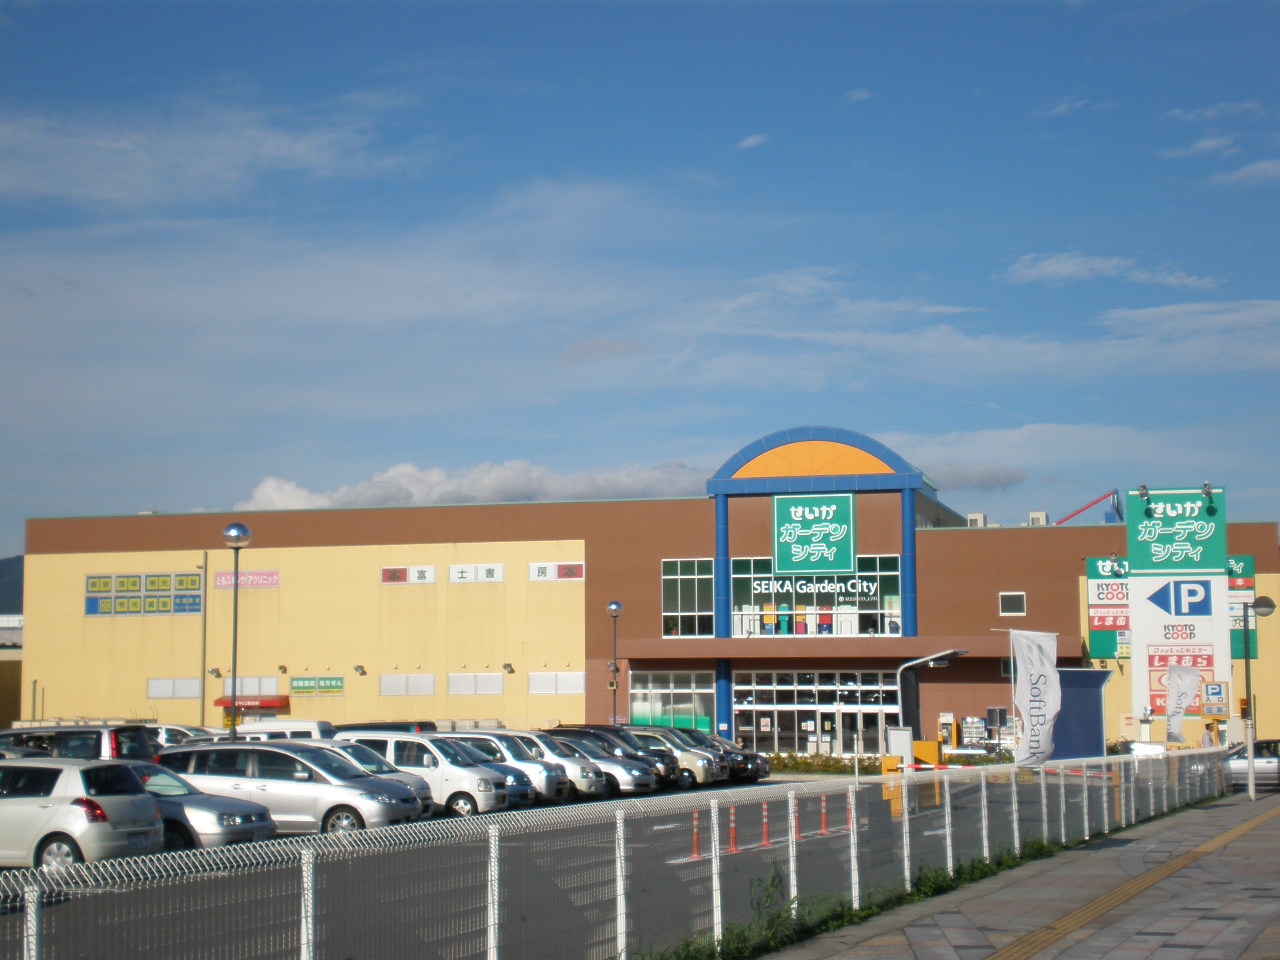 Shopping centre. 584m until the outcome Garden City (shopping center)